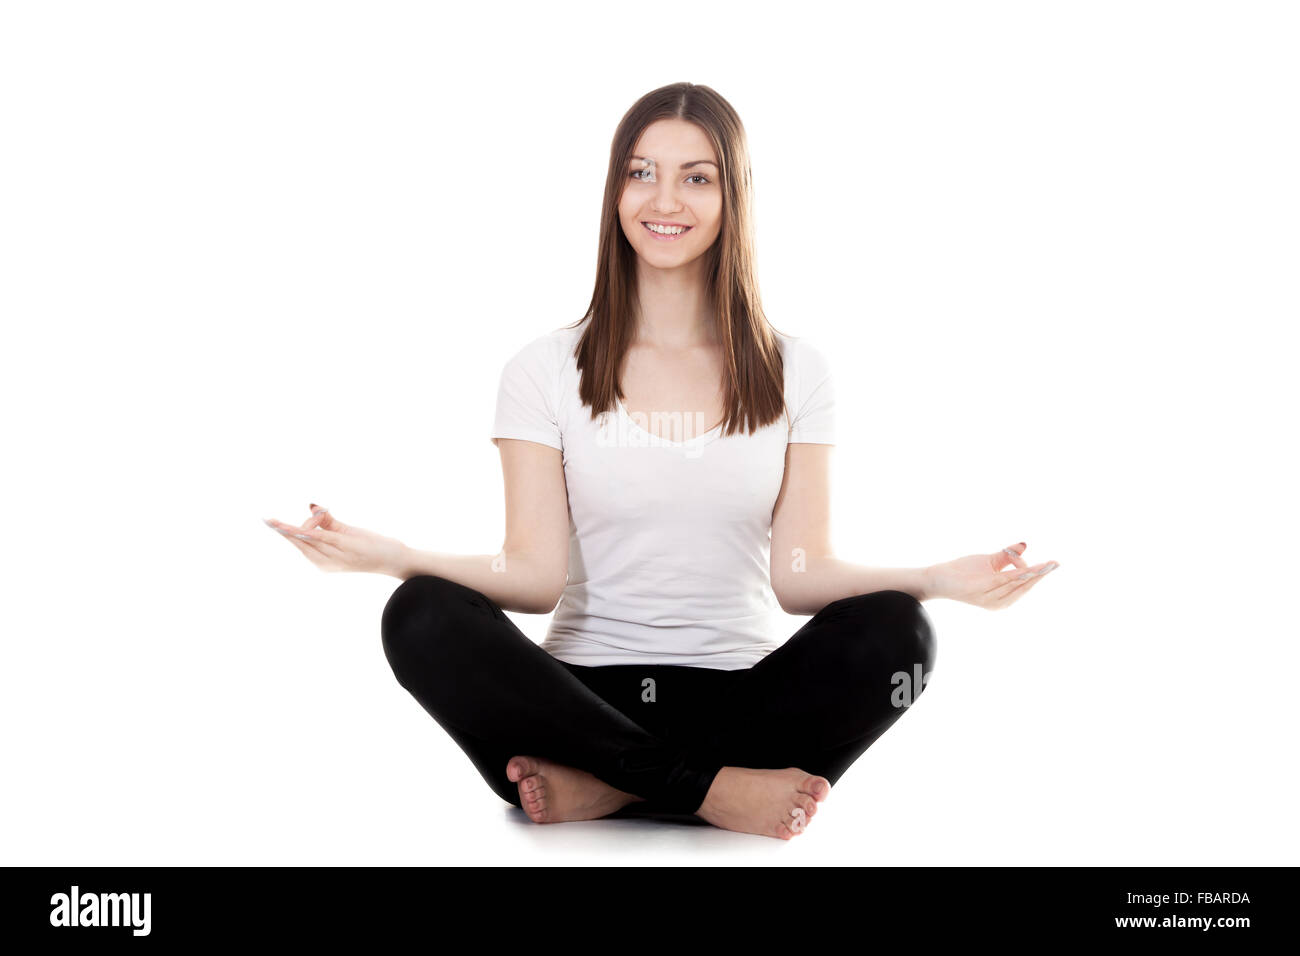 Yogi sportif pour exercer en position du lotus, Yoga pose sukhasana (Pose facile, agréable, poser décent) posent avec palmiers dans Mudra, s Banque D'Images